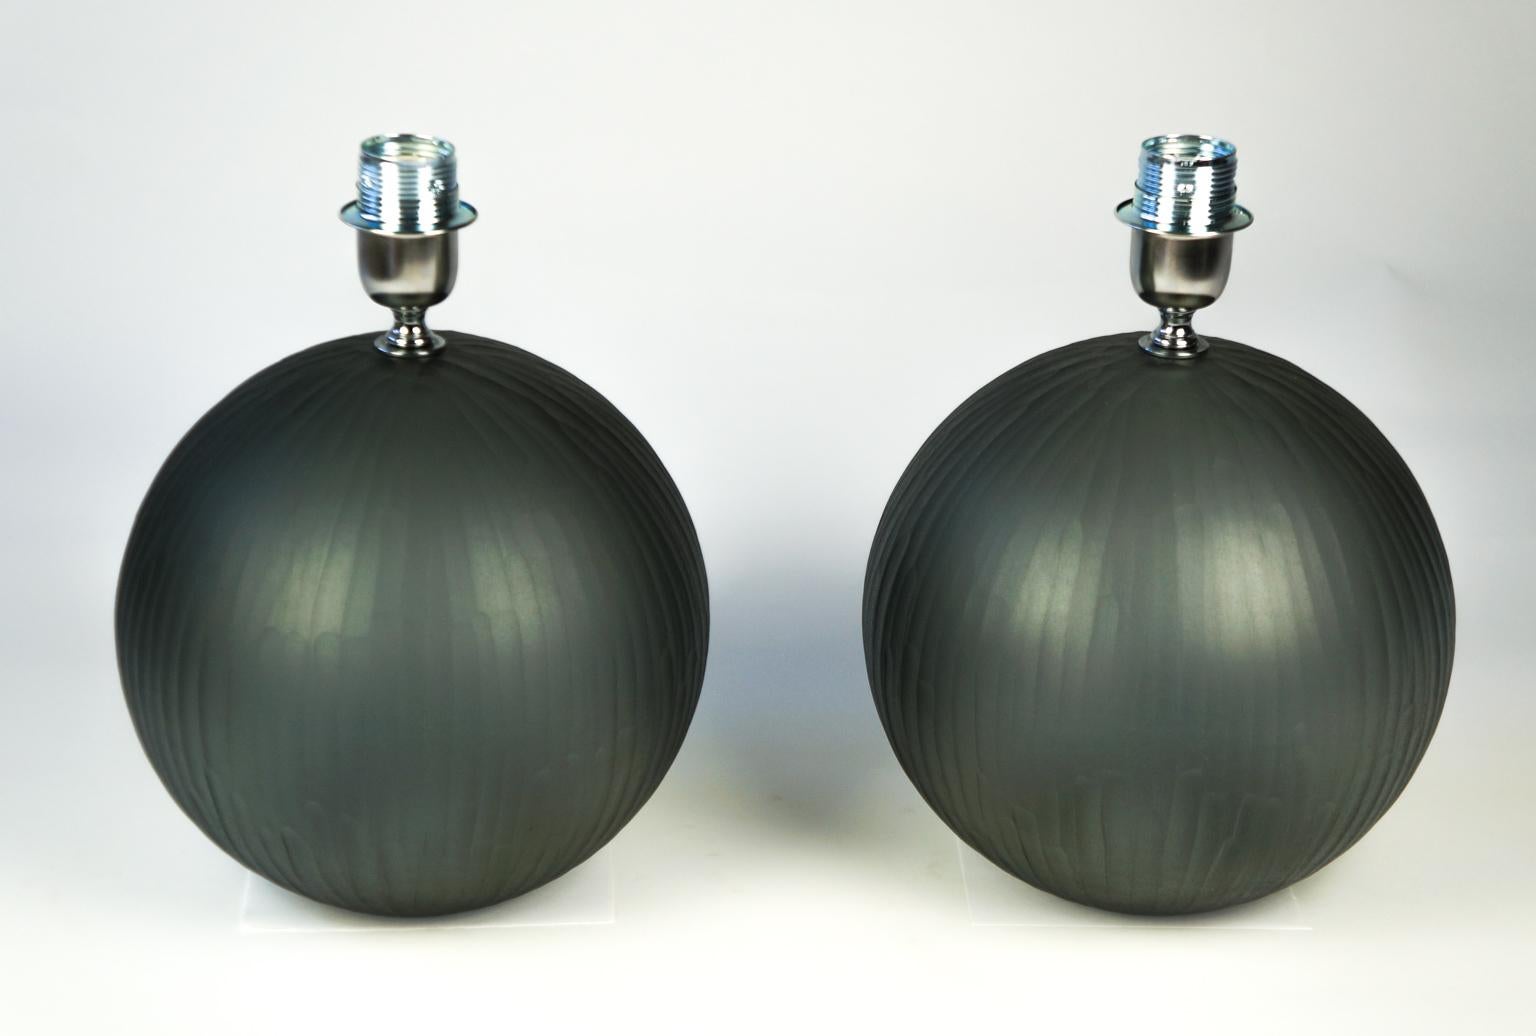 Es handelt sich um eine sehr einfache Lampe, die nur aus einer Kugel besteht. Die 1998 von dem Glasmeister Alberto Donà entworfene Leuchte ist, wie gesagt, sehr einfach und besteht aus einer einzigen Kugel, aber nicht deshalb ist sie wirkungslos. In